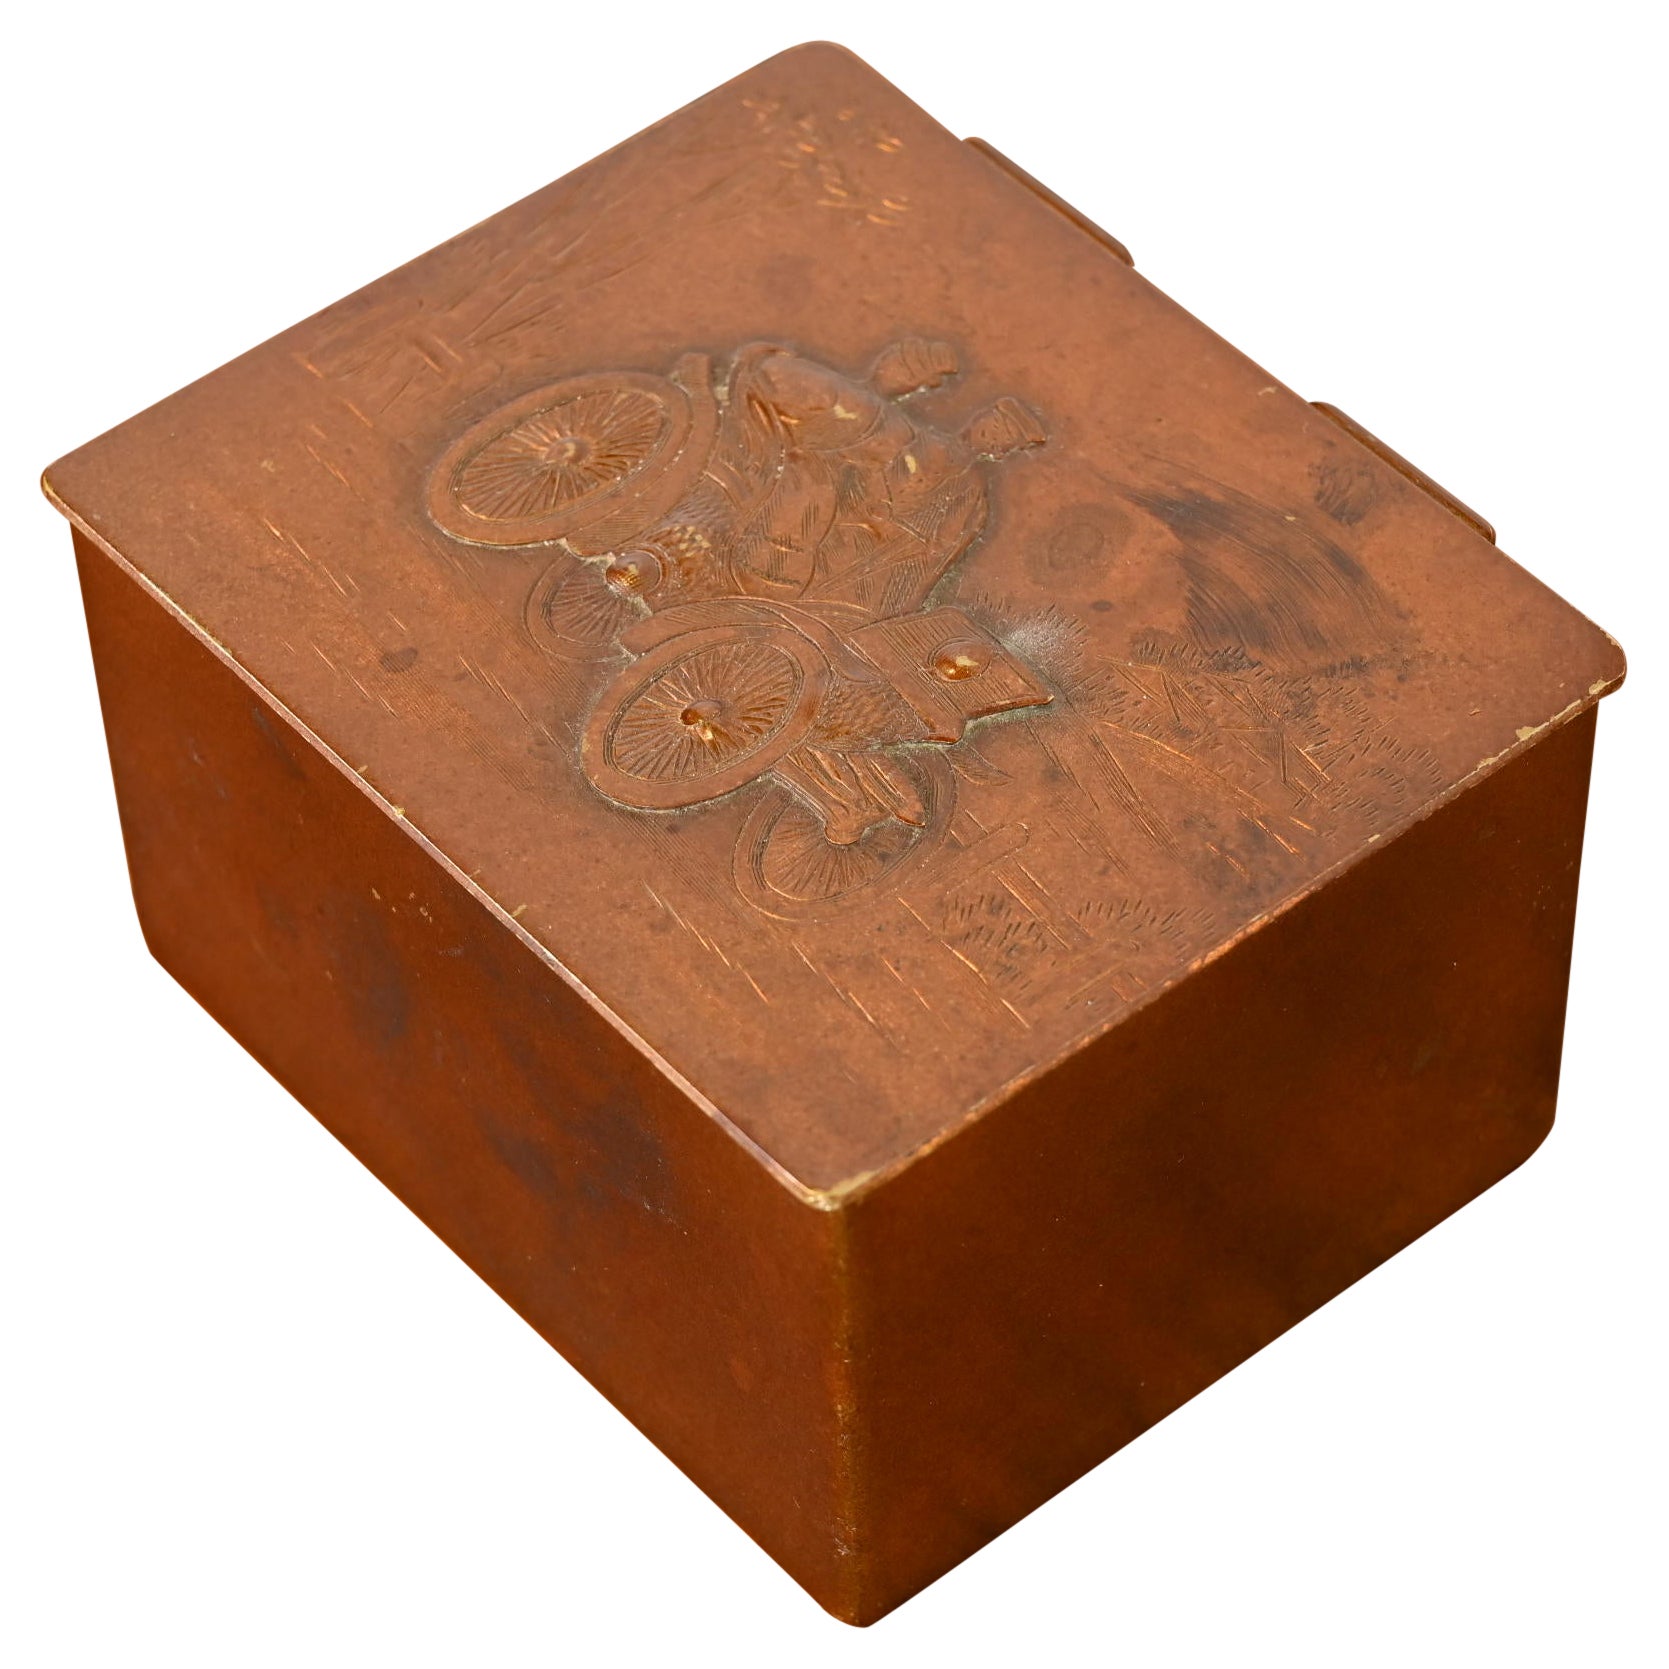 Tiffany & Co. New York Decorative Copper Desk Box or Cigarette Box